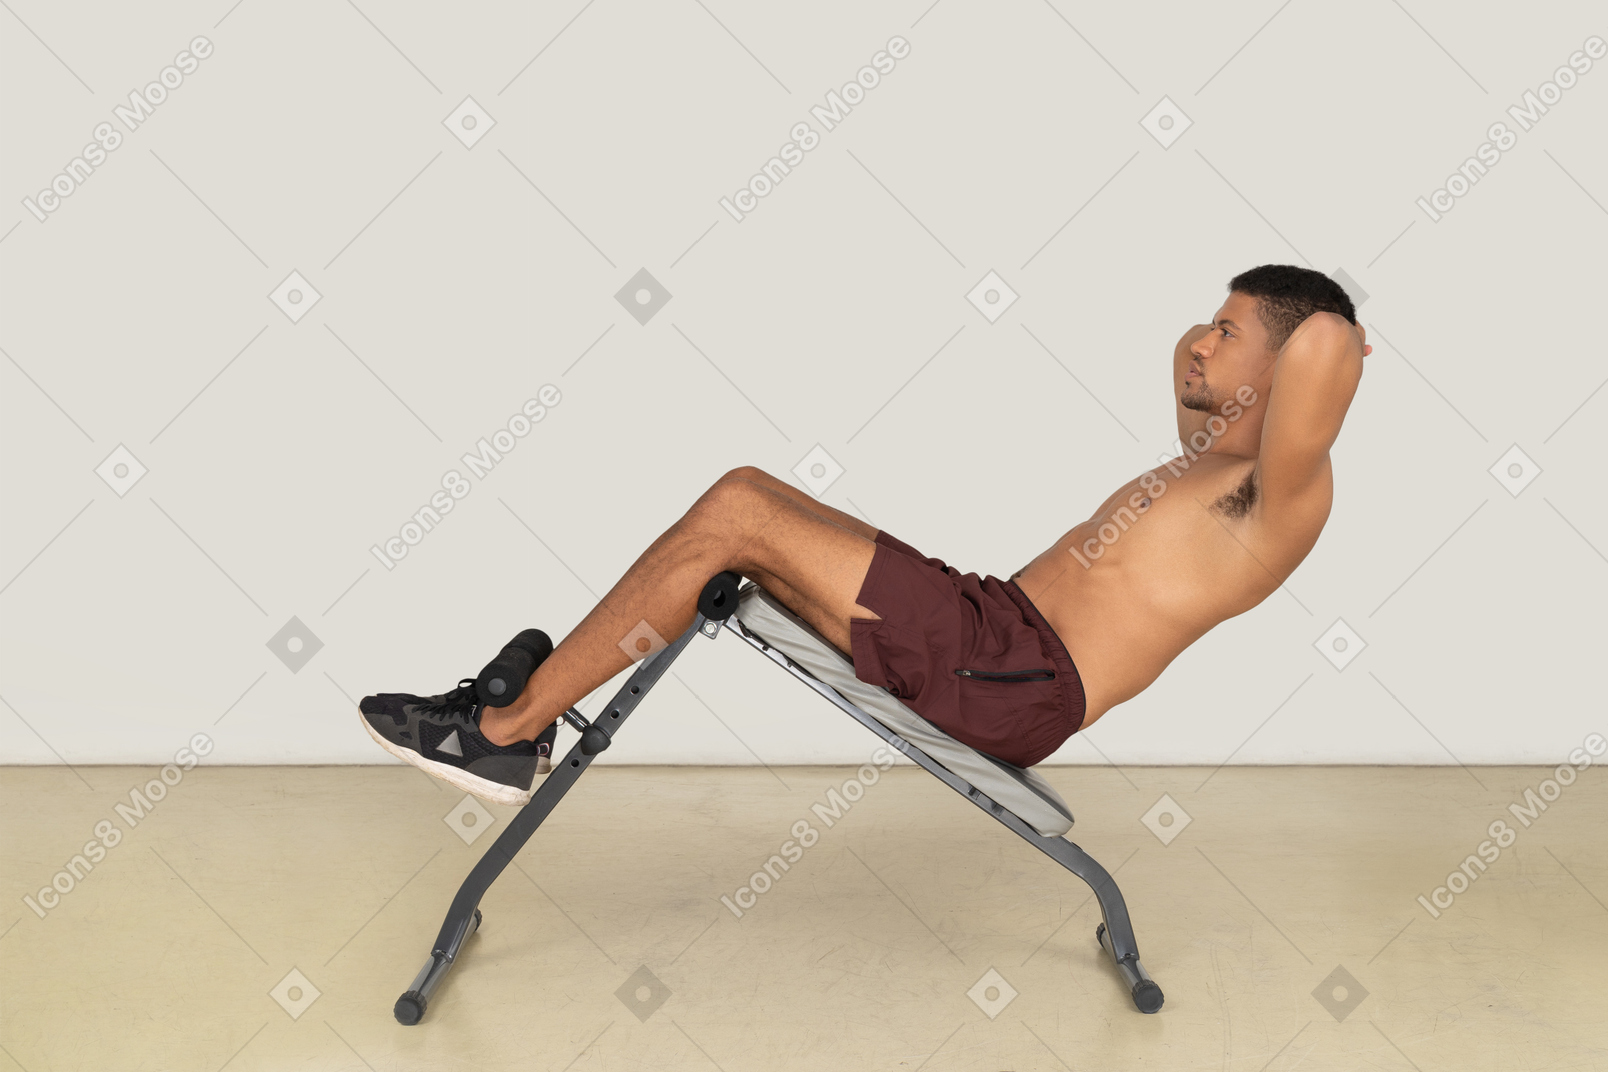 Vista lateral do homem malhando no banco de musculação